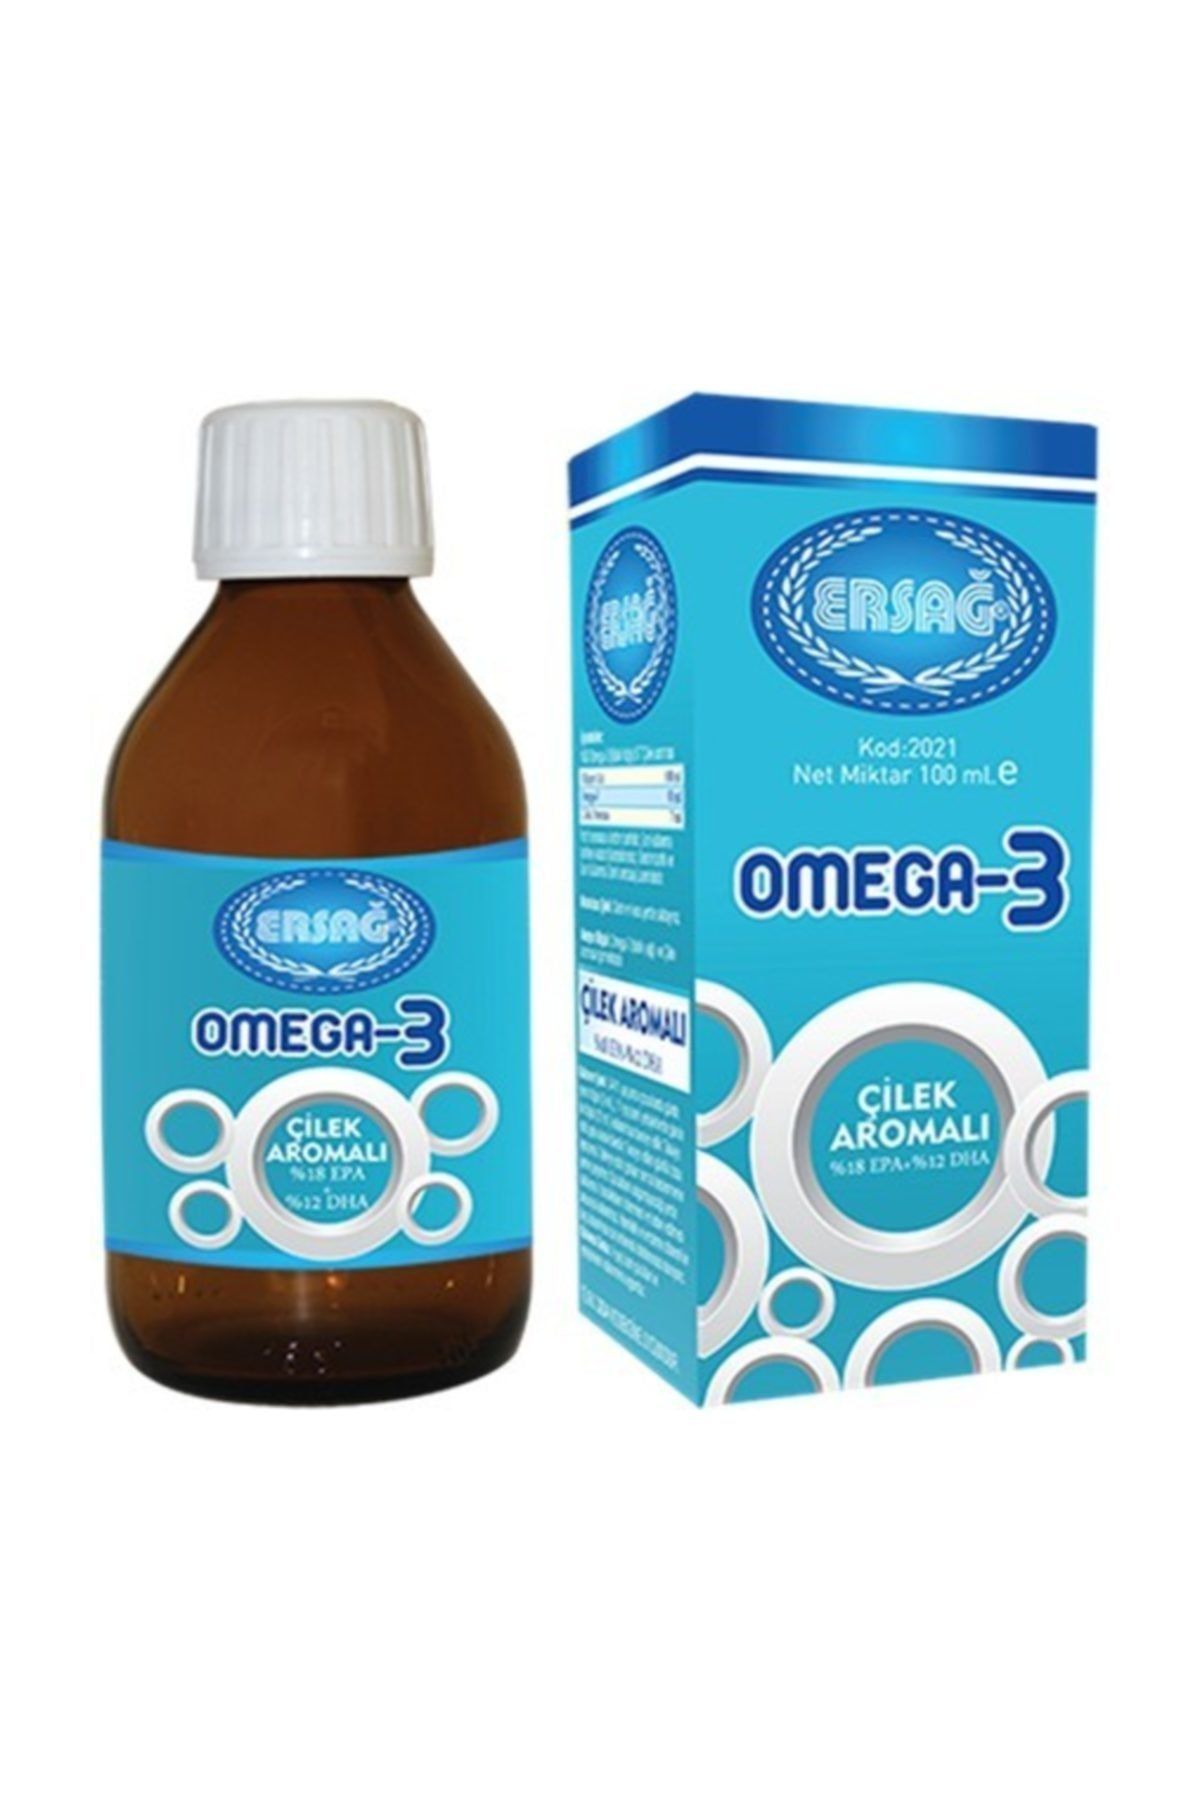 Ersağ Çilek Aromalı Sıvı Omega-3